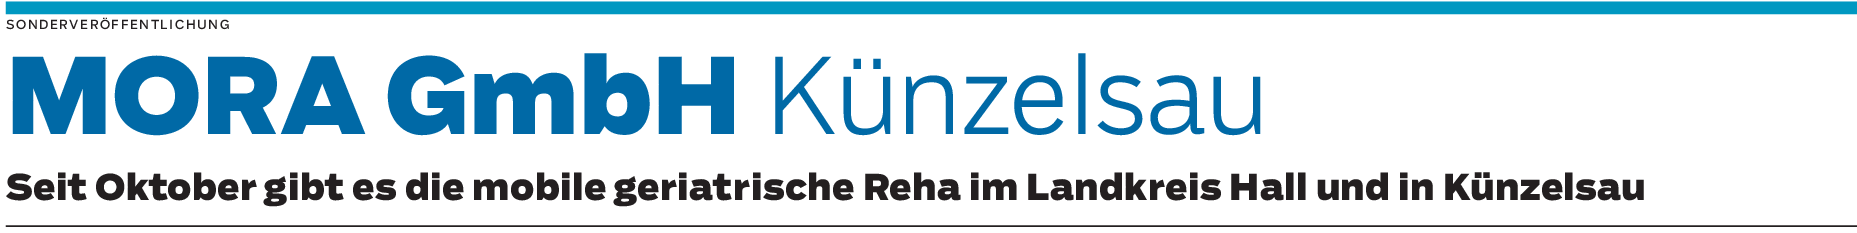 MORA GmbH im Landkreis Hall und Künzelsau: Reha im Zuhause